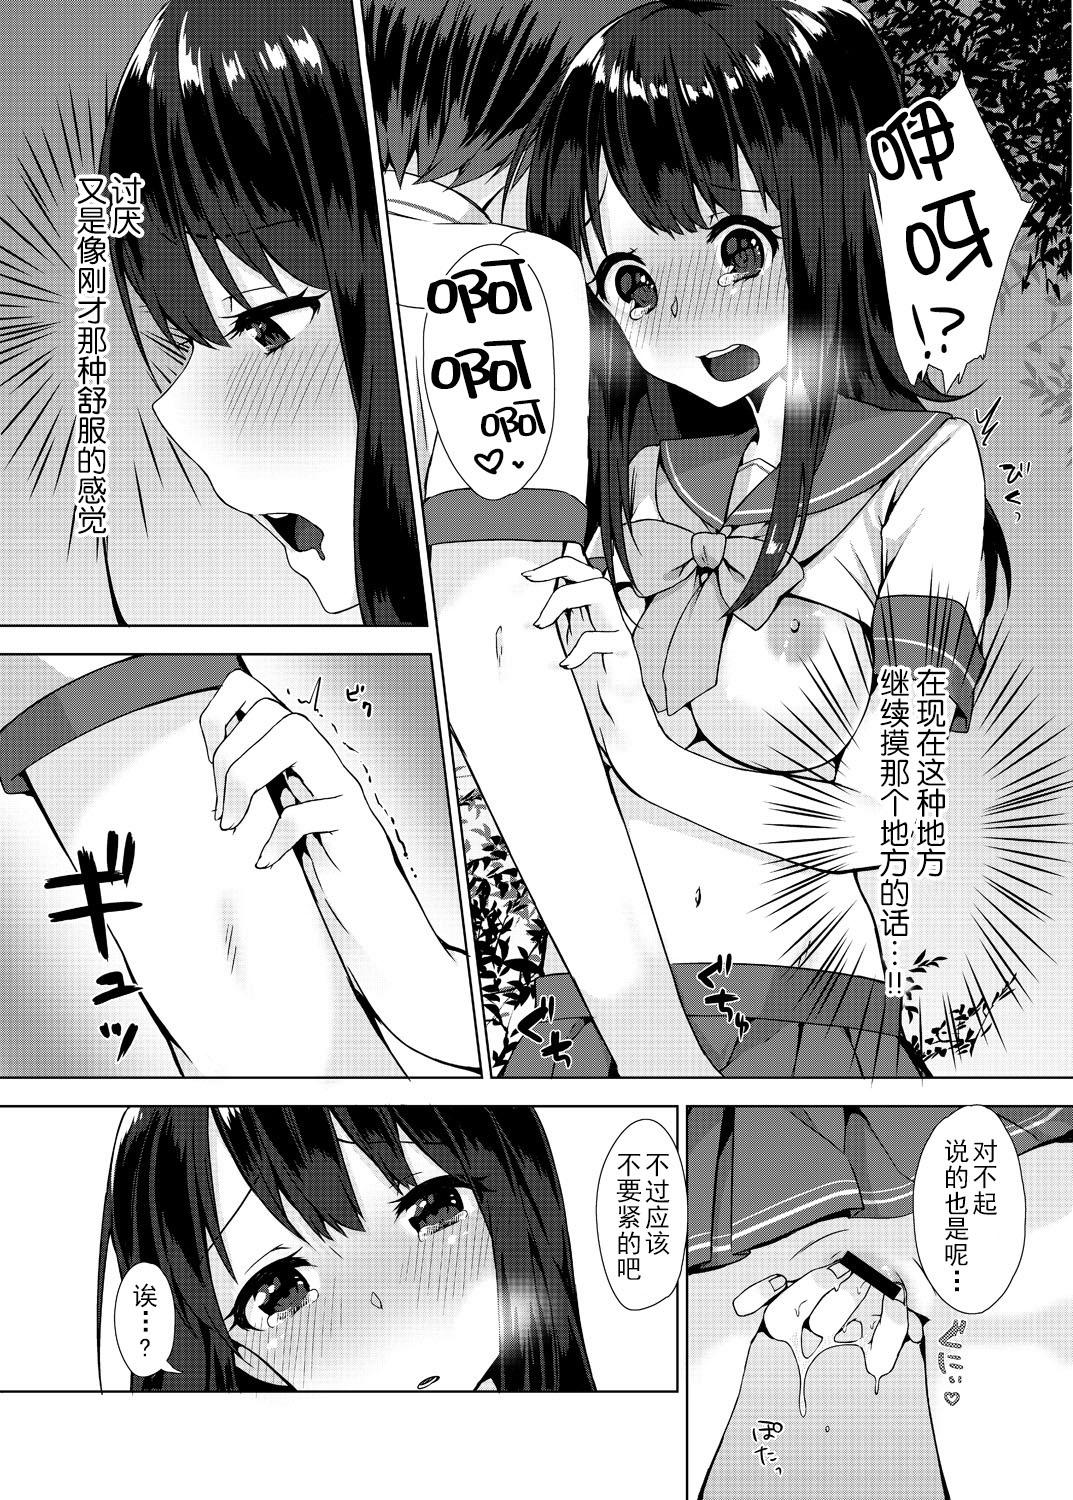 Bald Pussy Pantsu Wasurete Hatsu Ecchi!? Nuresugichatte Tomaranai 2 Bathroom - Page 6